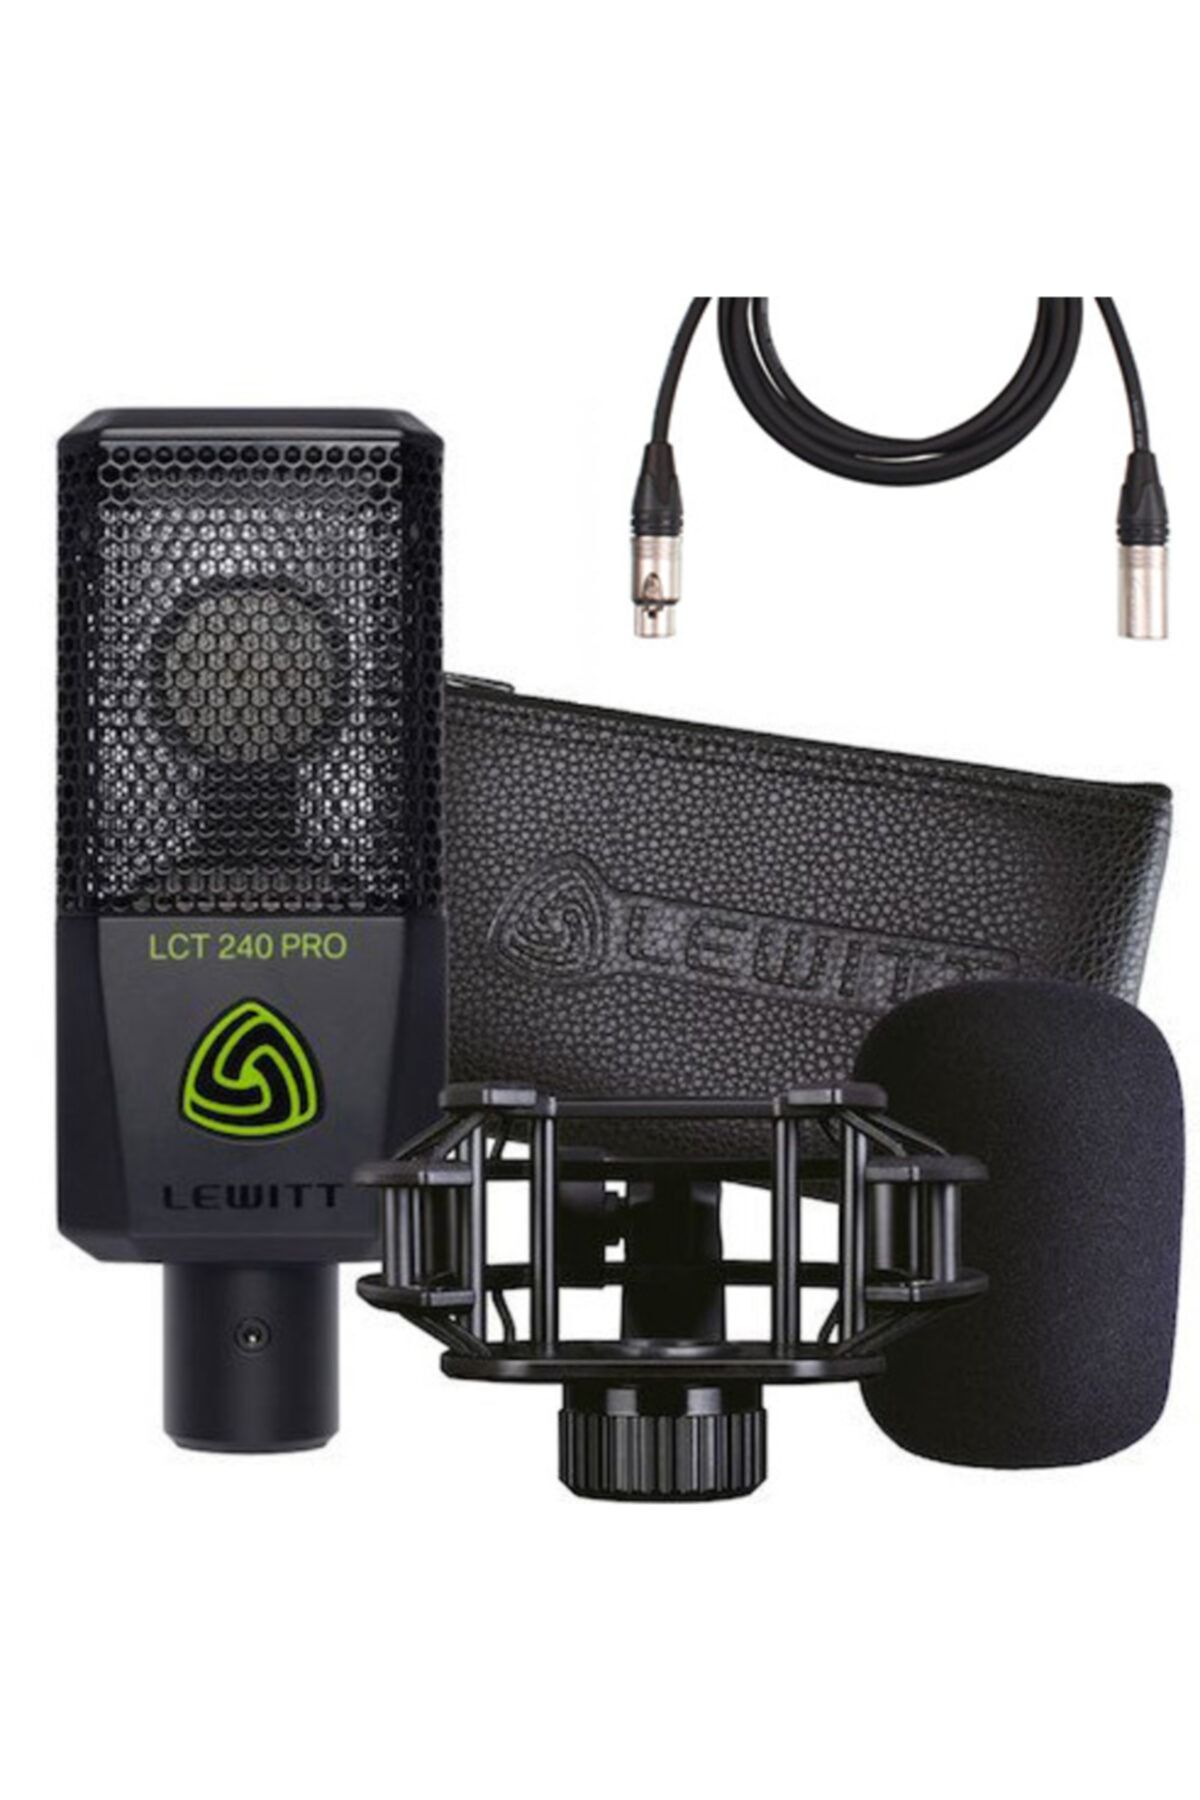 Siyah　Yorumları　Pro　240　Lct　Lewitt　Fiyatı,　Mikrofon　Valuepack　Kondenser　Trendyol